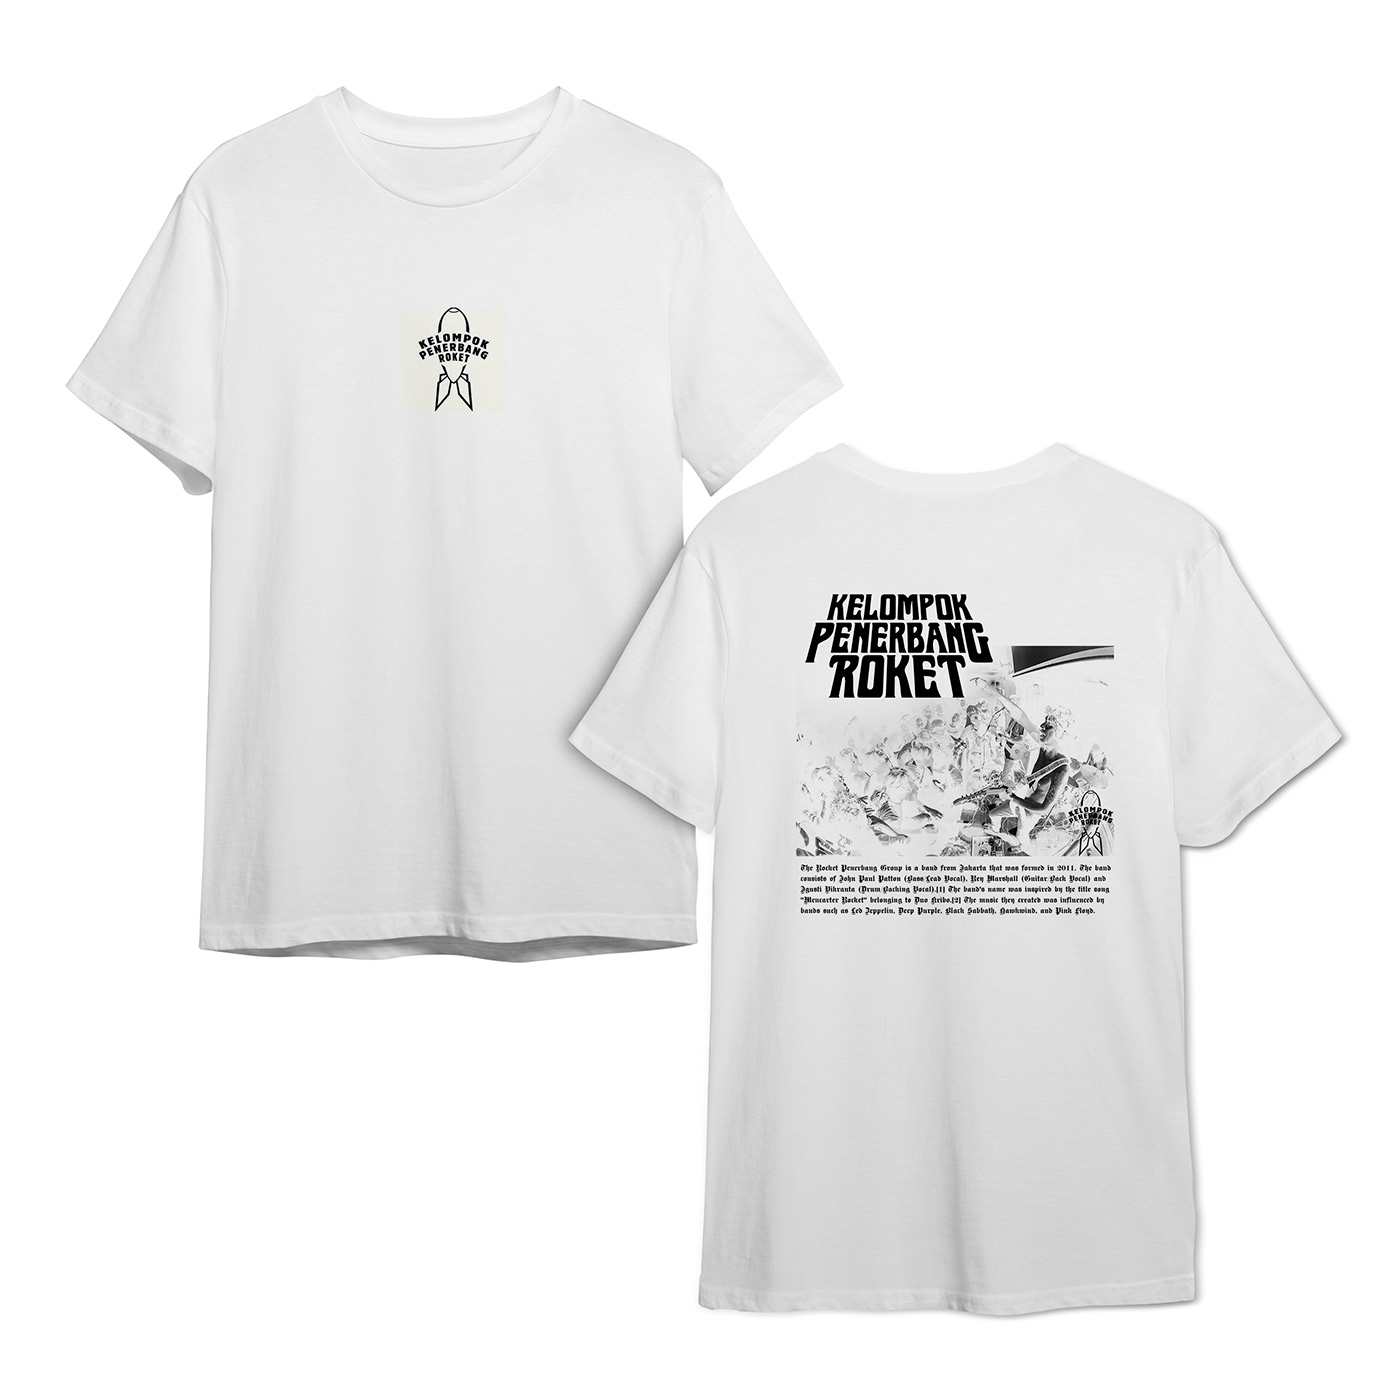 band Clothing free mockup  Kelompok Penerbang Roket mock up Mockup psd template streetwear T-Shirt Design tshirt